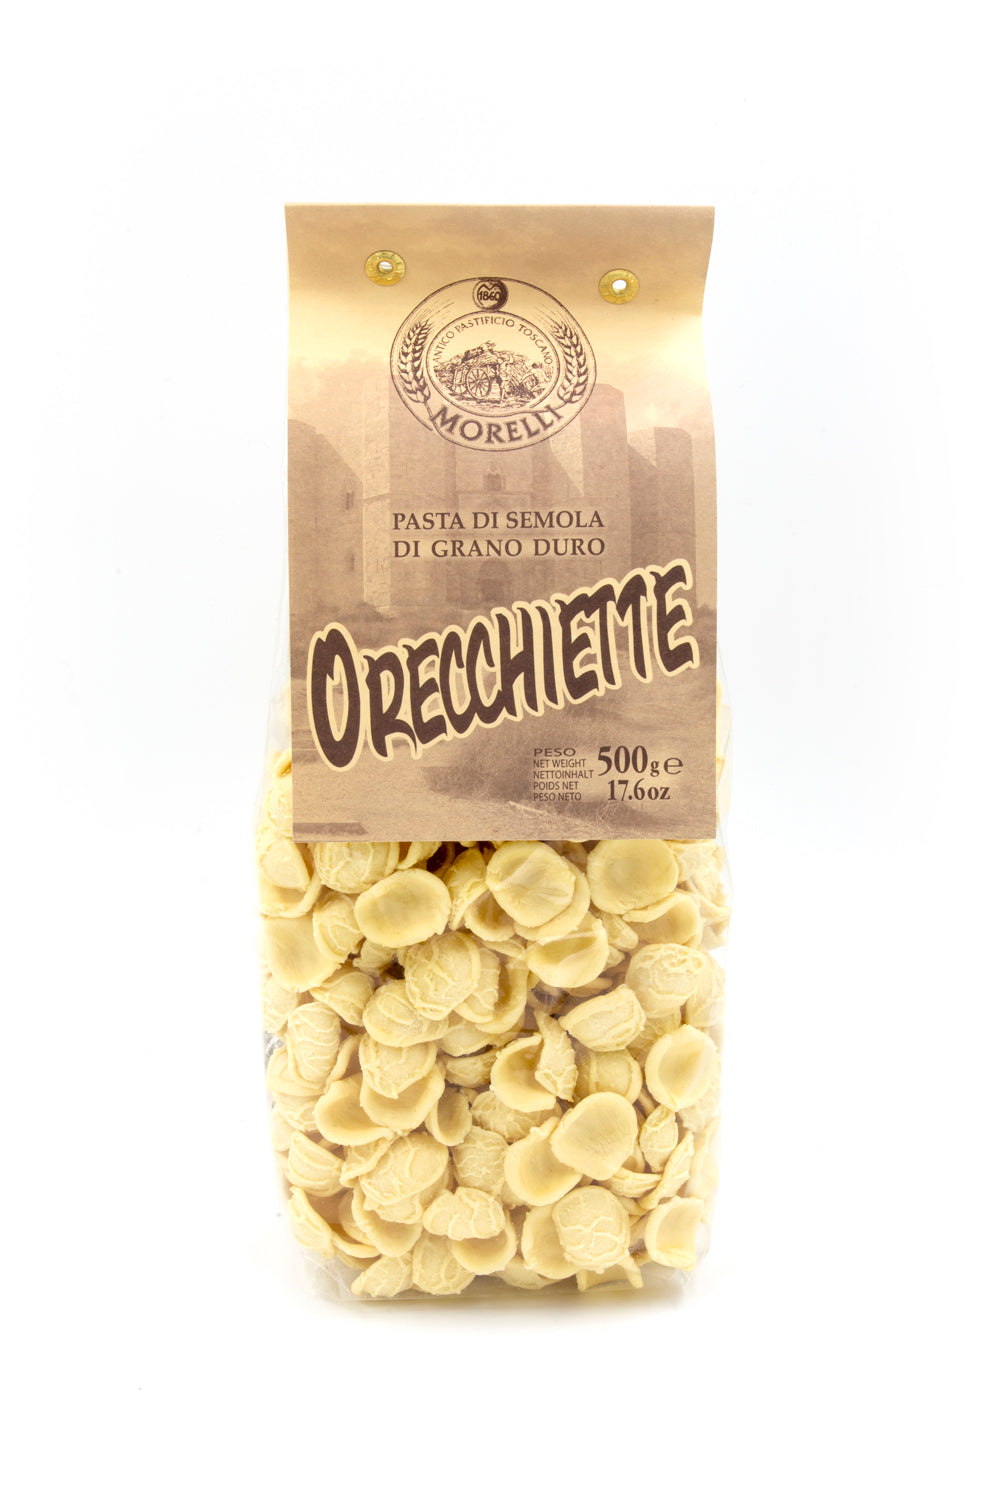 Morelli Orecchiette Pasta 500g